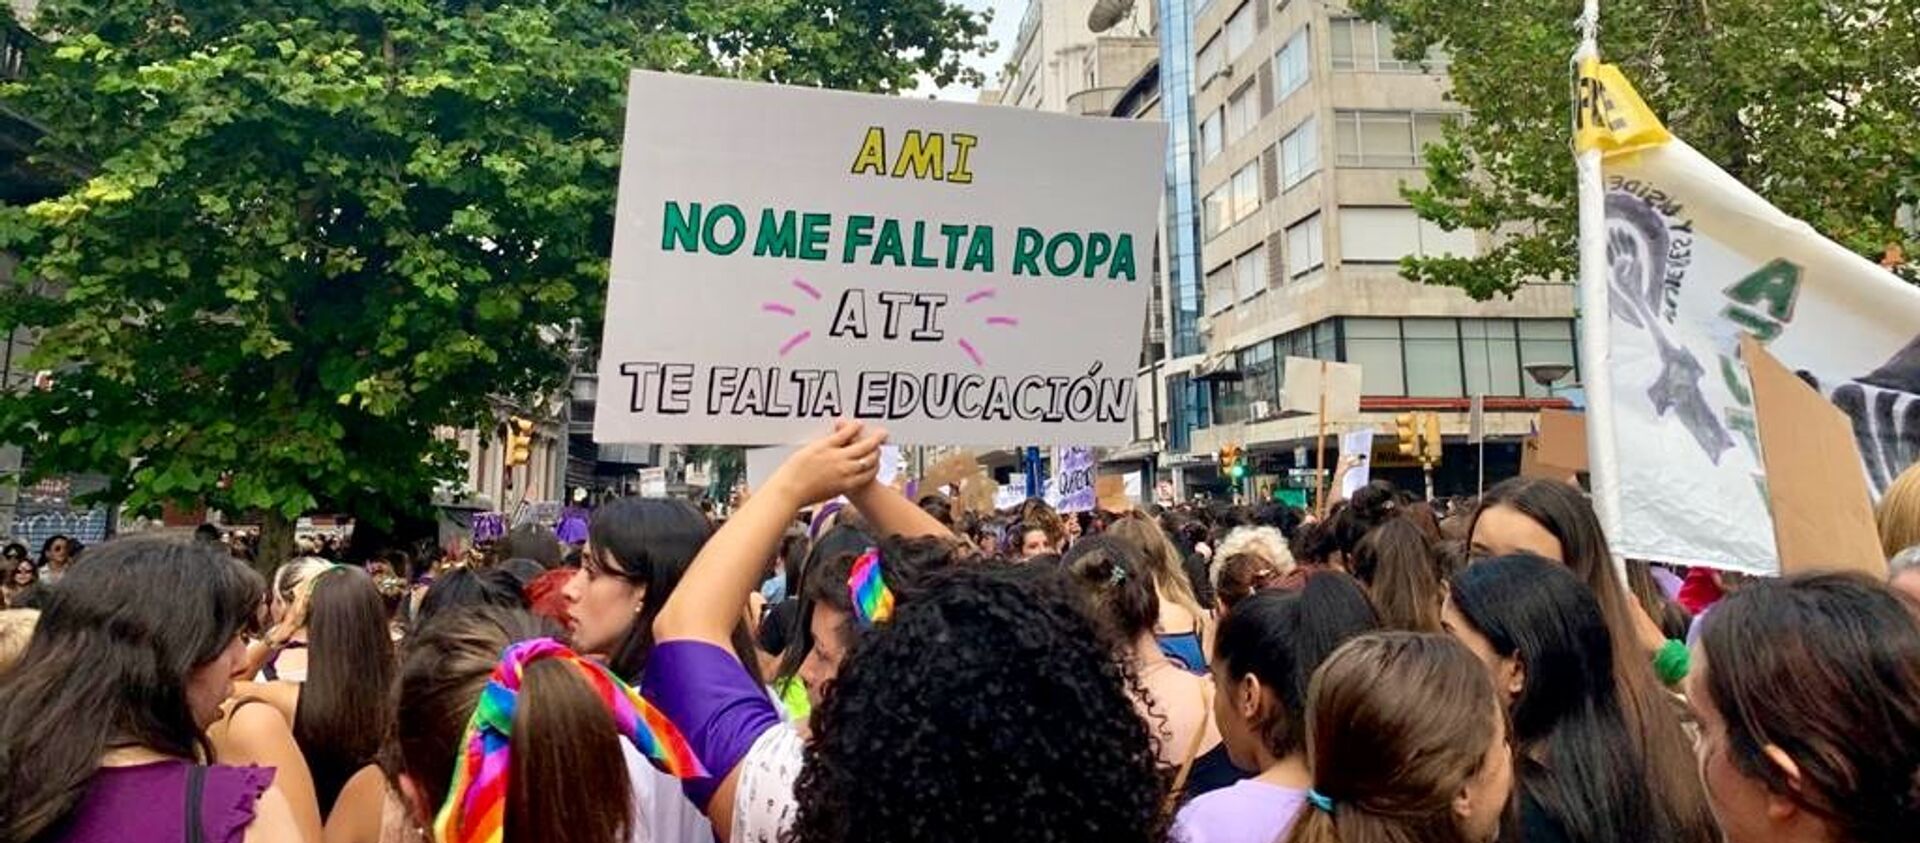 Mujeres sostienen una pancarta durante la marcha del 8M en Montevideo, Uruguay - Sputnik Mundo, 1920, 22.07.2020